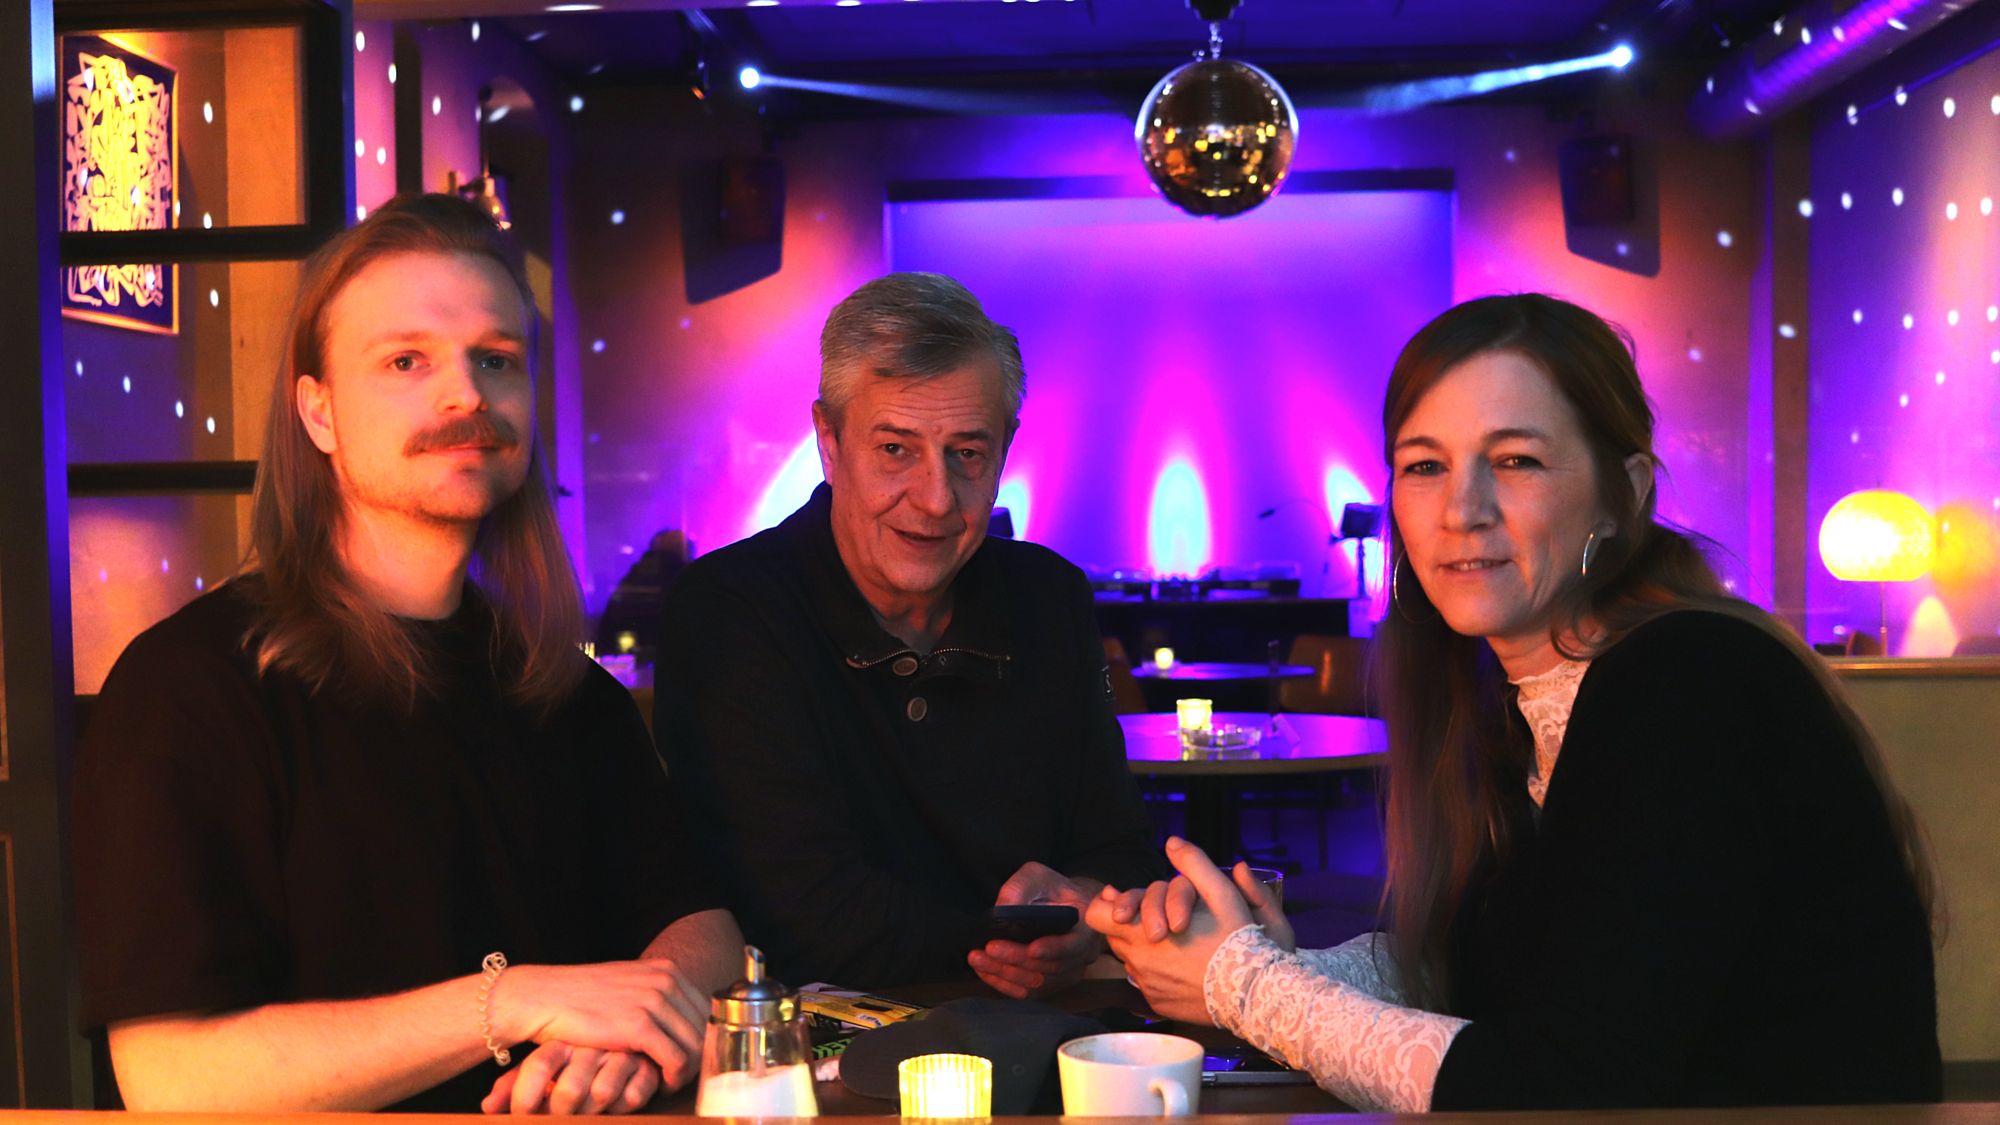 Jonas Peupelmann, Ralf Gaigl und Yvonne Bärsch - drei vom Team der Hope-Sessions. 